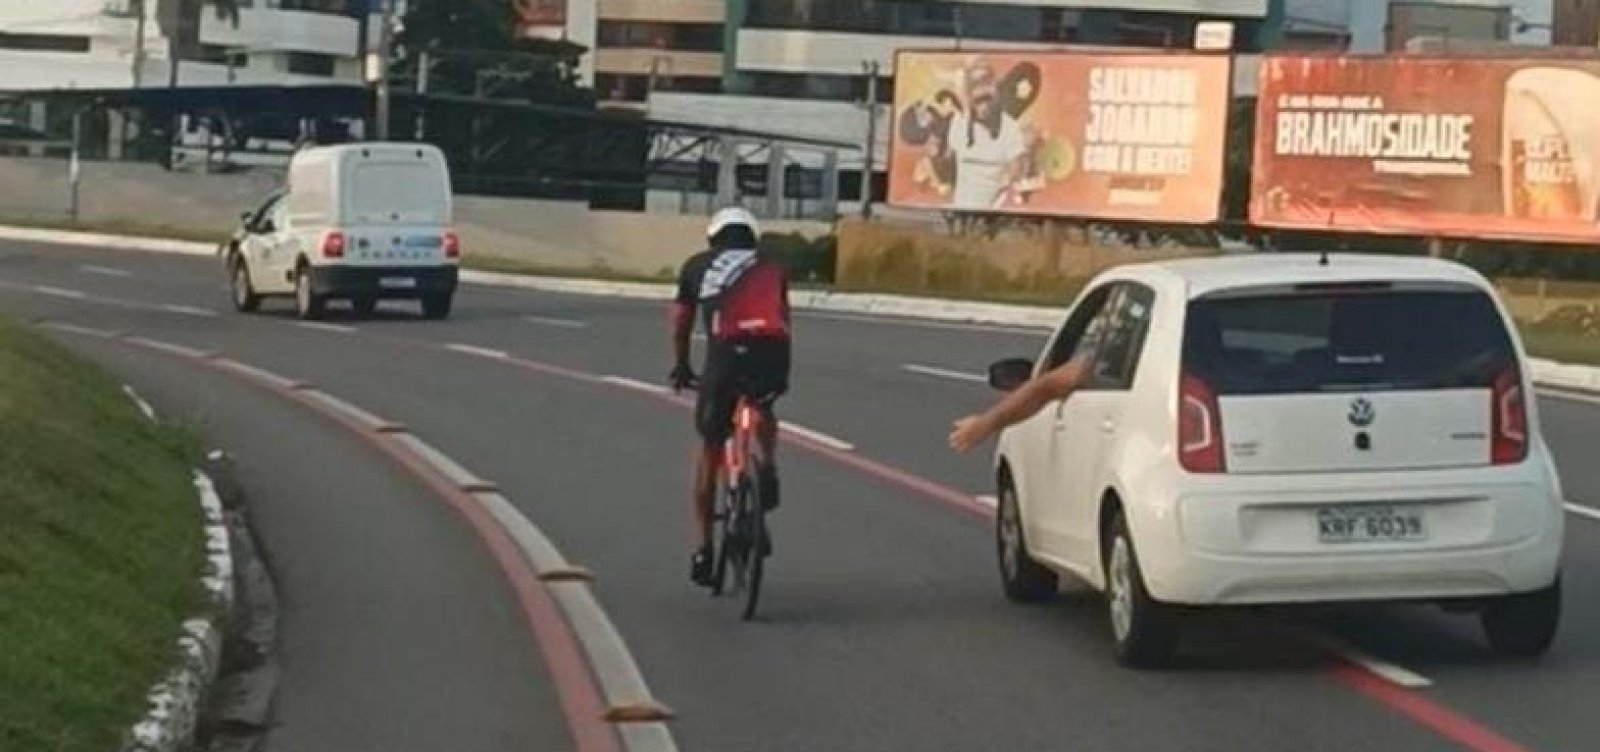 Ciclistas denunciam assédios de motorista em Salvador: "tentou pegar na minha bunda"